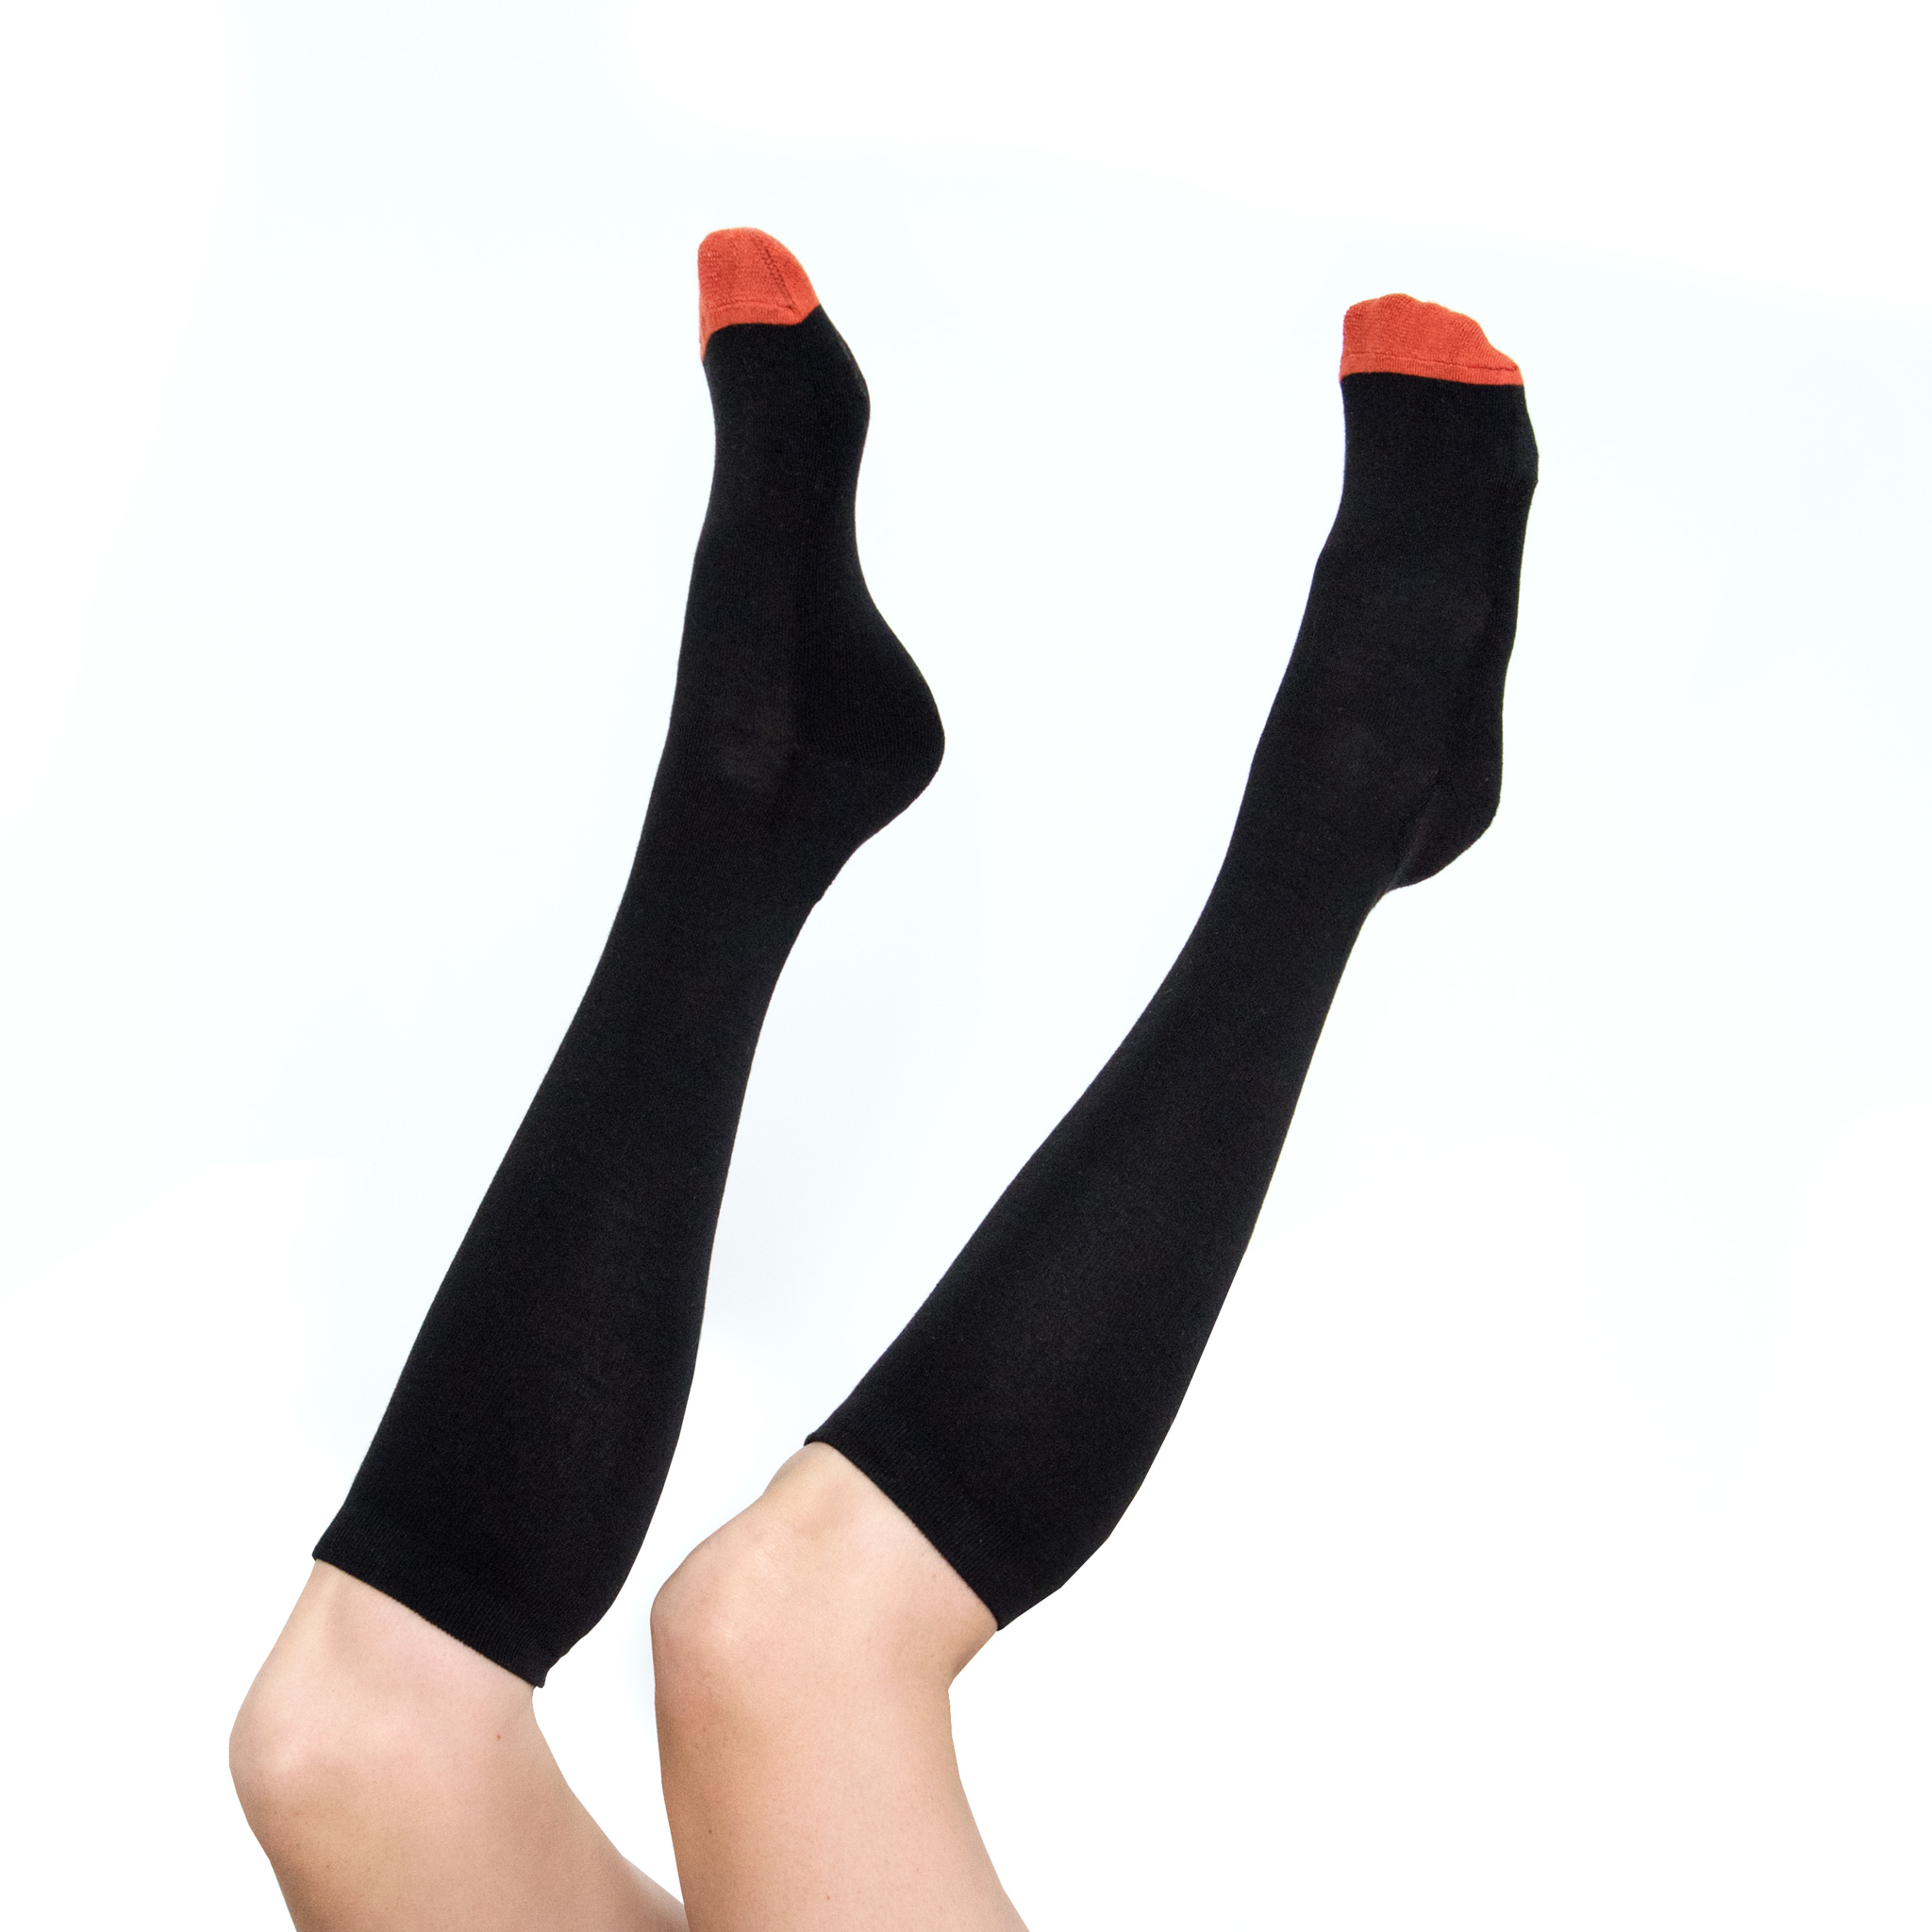 Banana Socks Unisex's Socks Knee-High